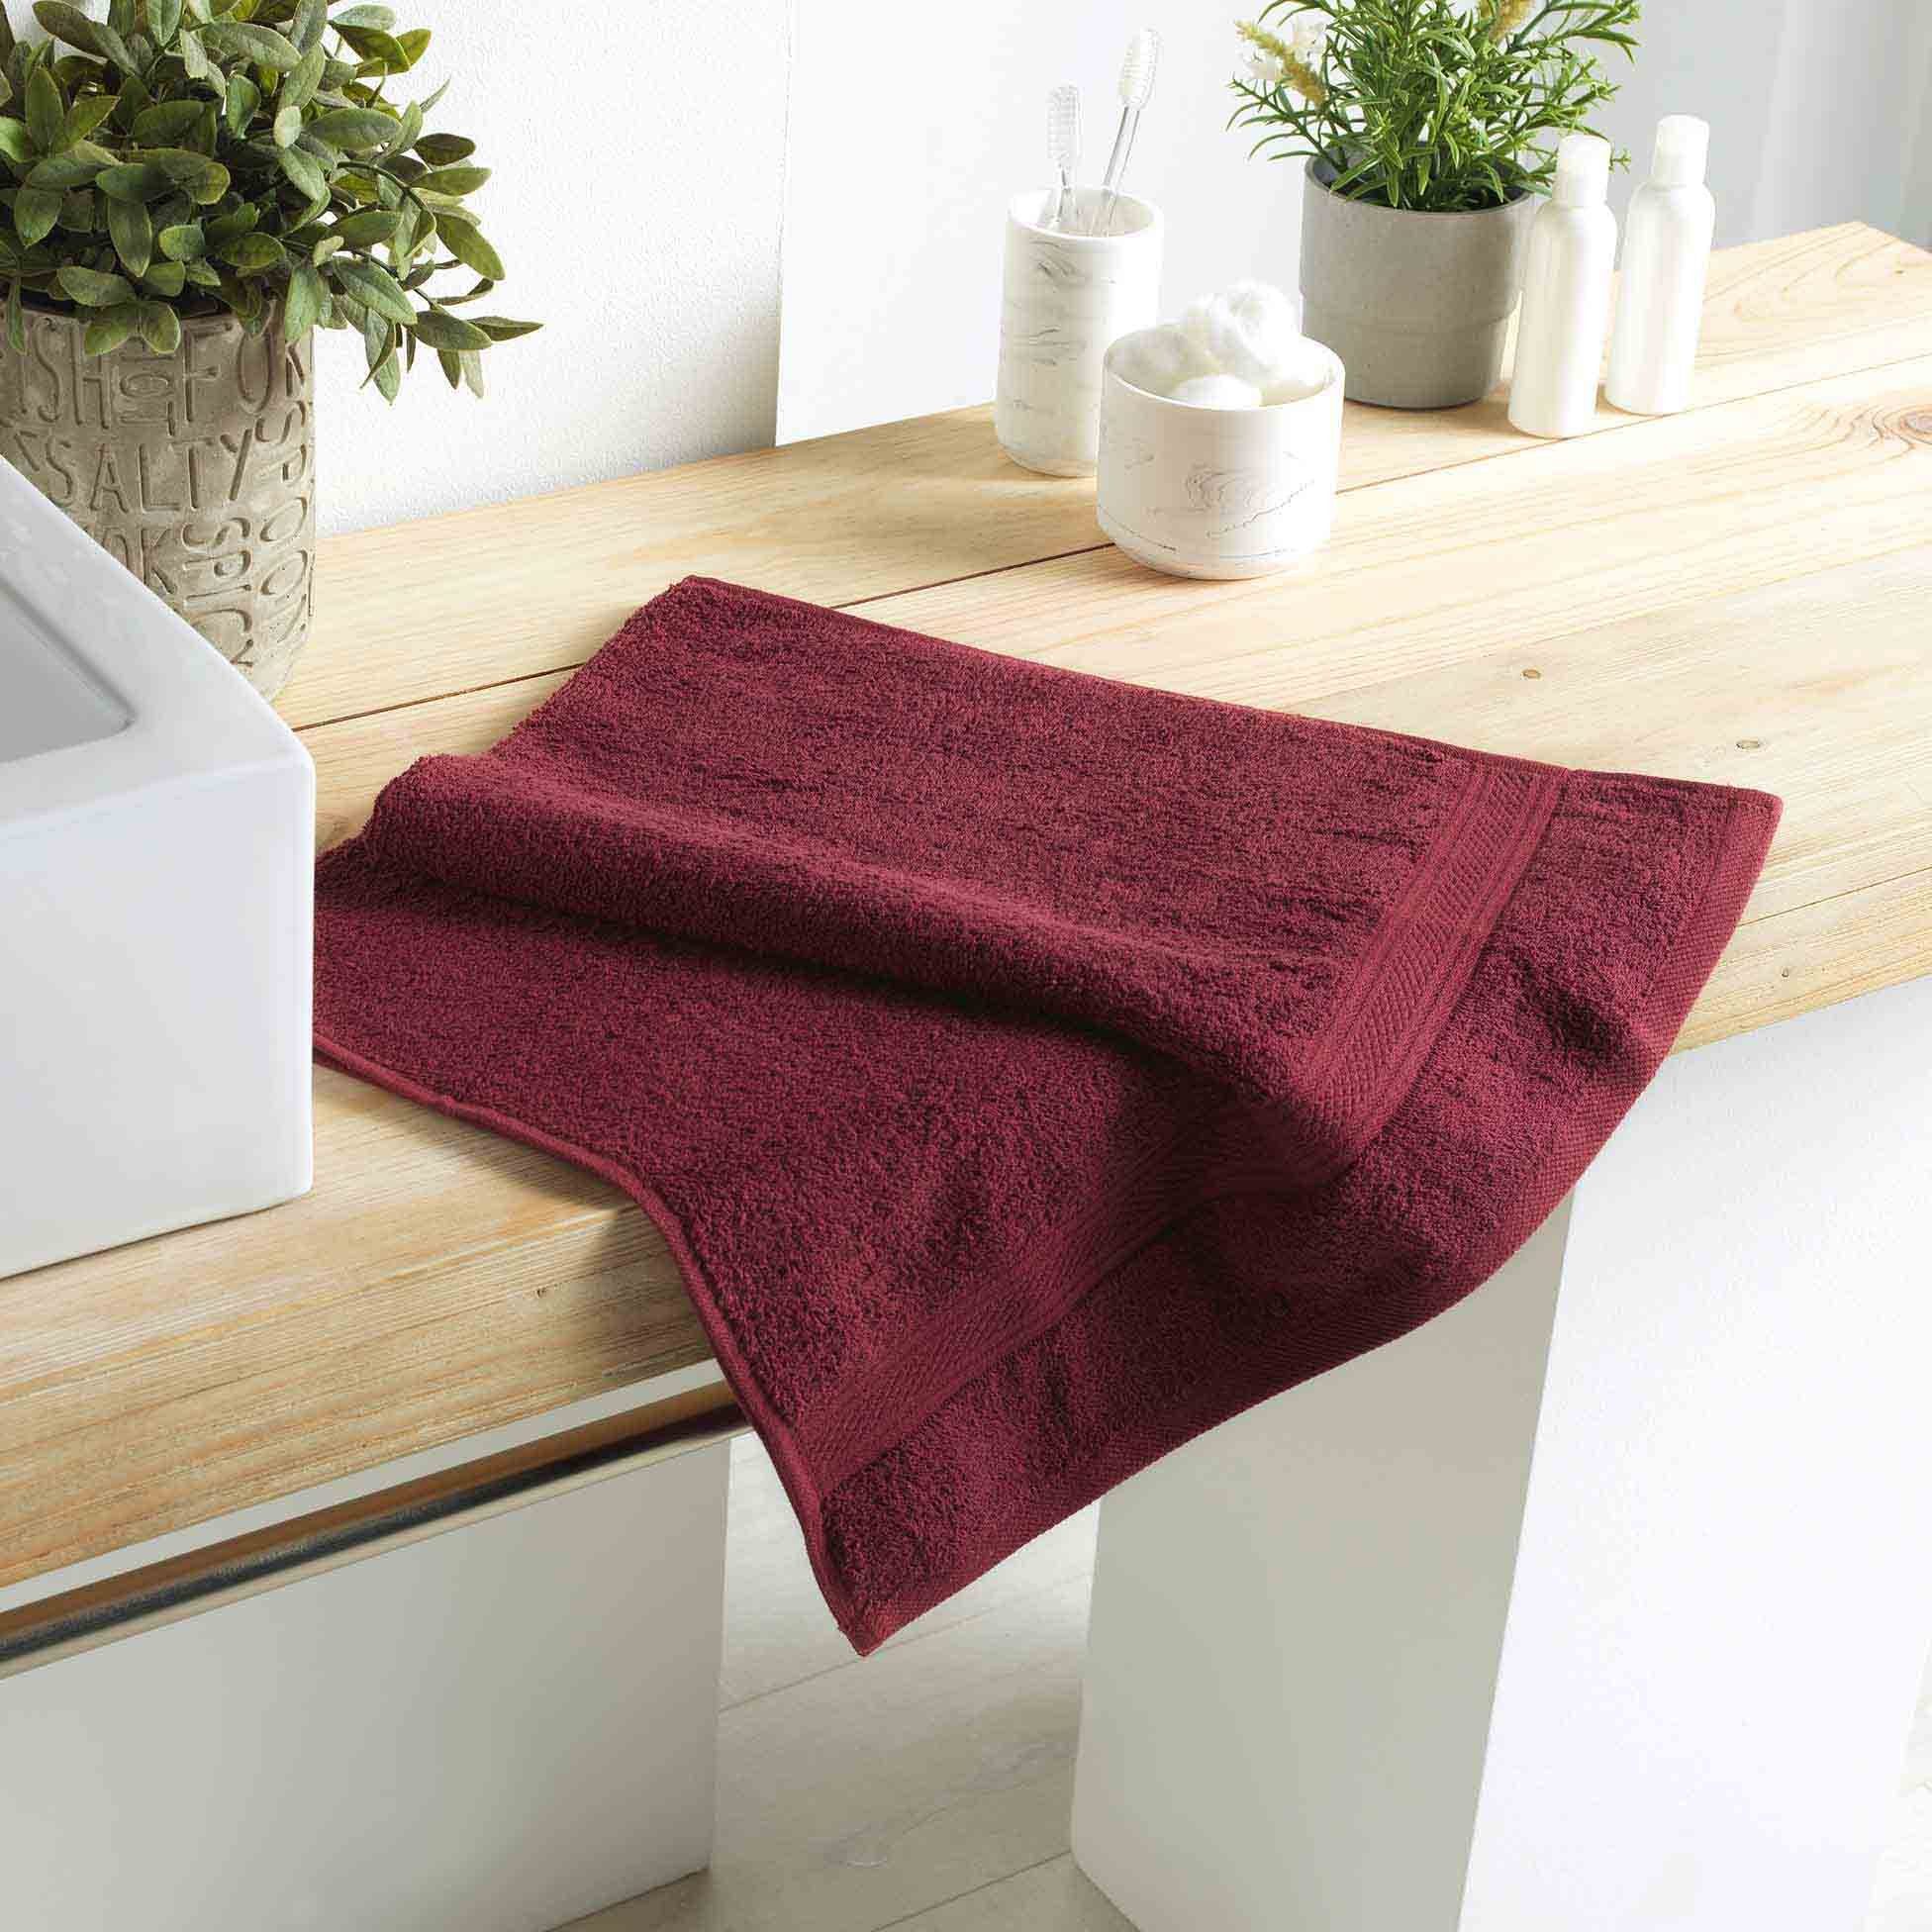 Handtuch Handtuch Handtücher Bordeaux Frottee 50x90cm, dynamic24 100% 50x90cm Handtuch Baumwolle Gästehandtuch